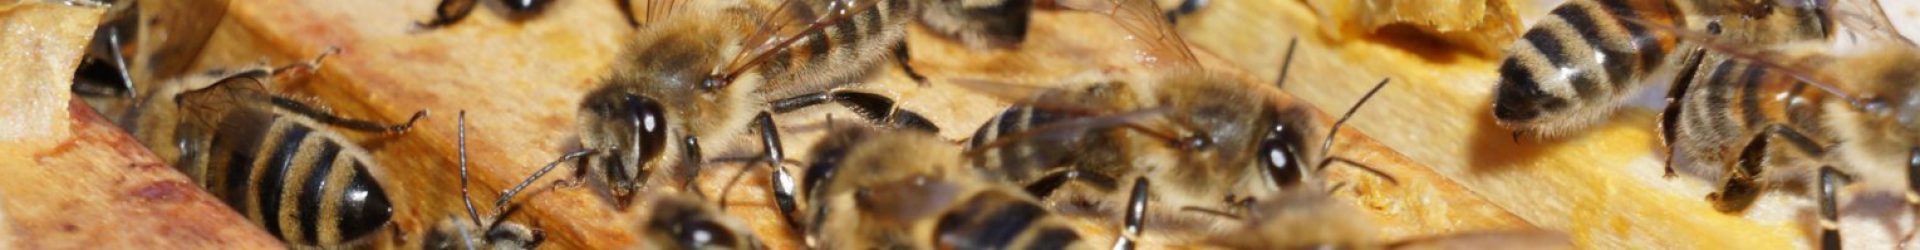 Kostenfreie Analyse von Bienenwachsproben bayerischer Imkereien